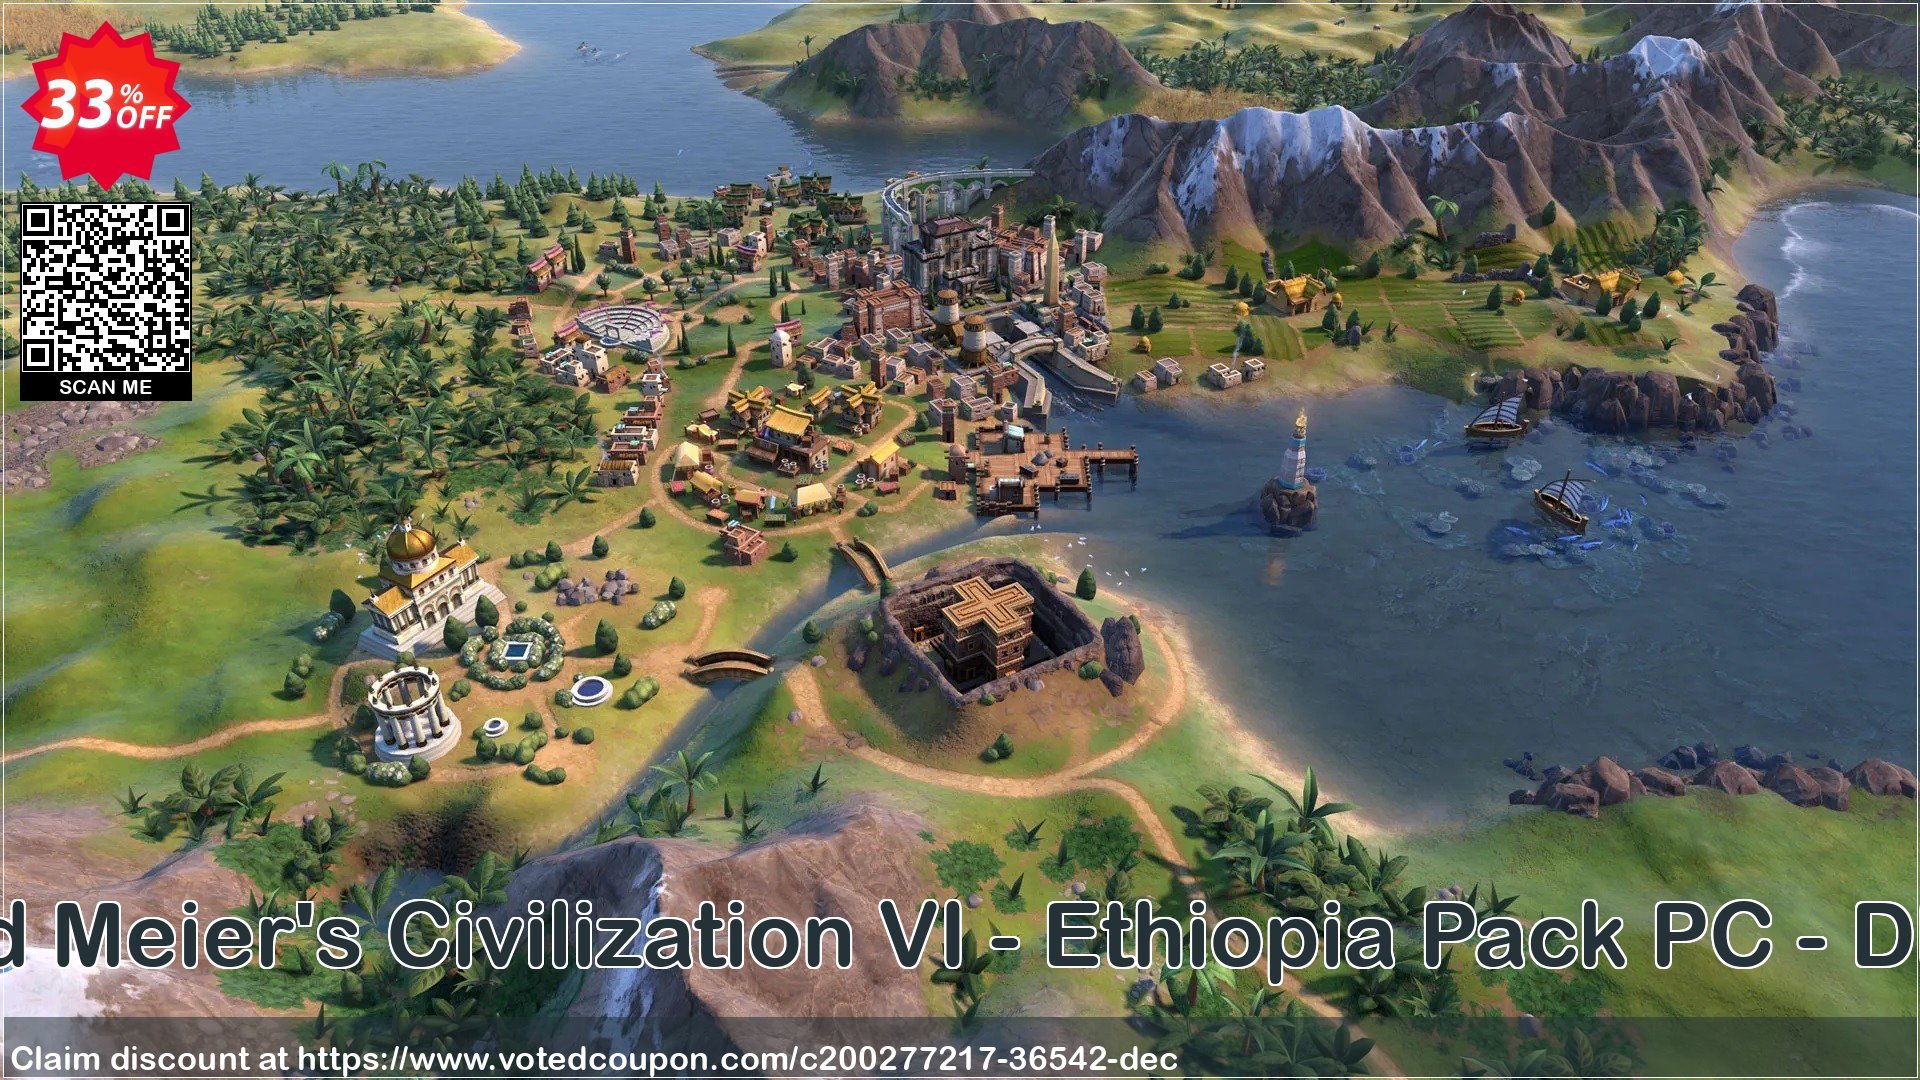 Sid Meier's Civilization VI - Ethiopia Pack PC - DLC Coupon Code Apr 2024, 33% OFF - VotedCoupon